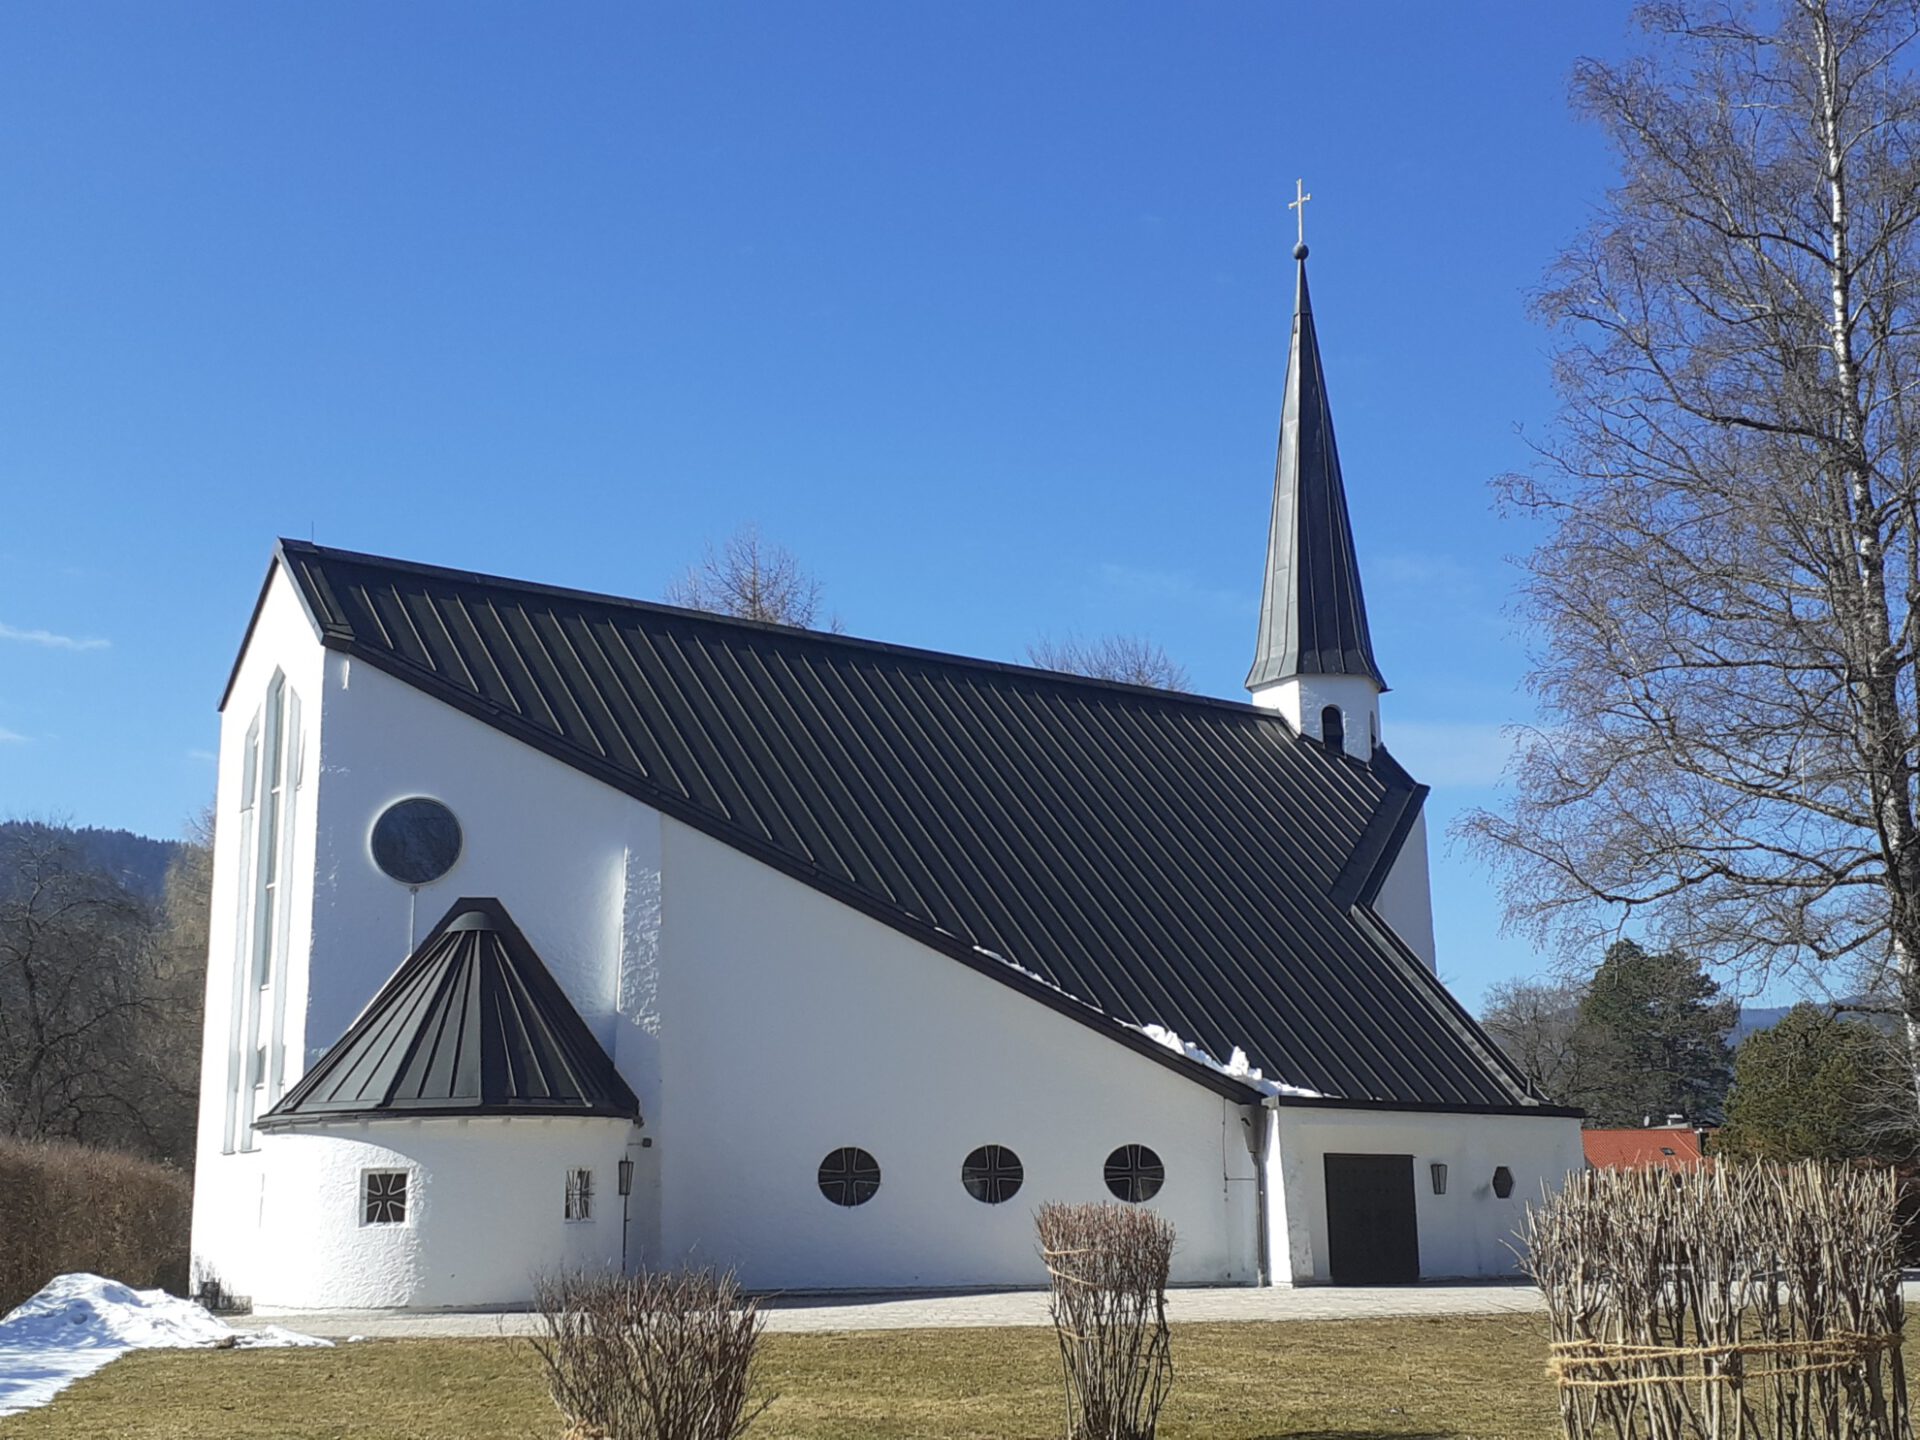 Auferstehungskirche Rottach-Egern